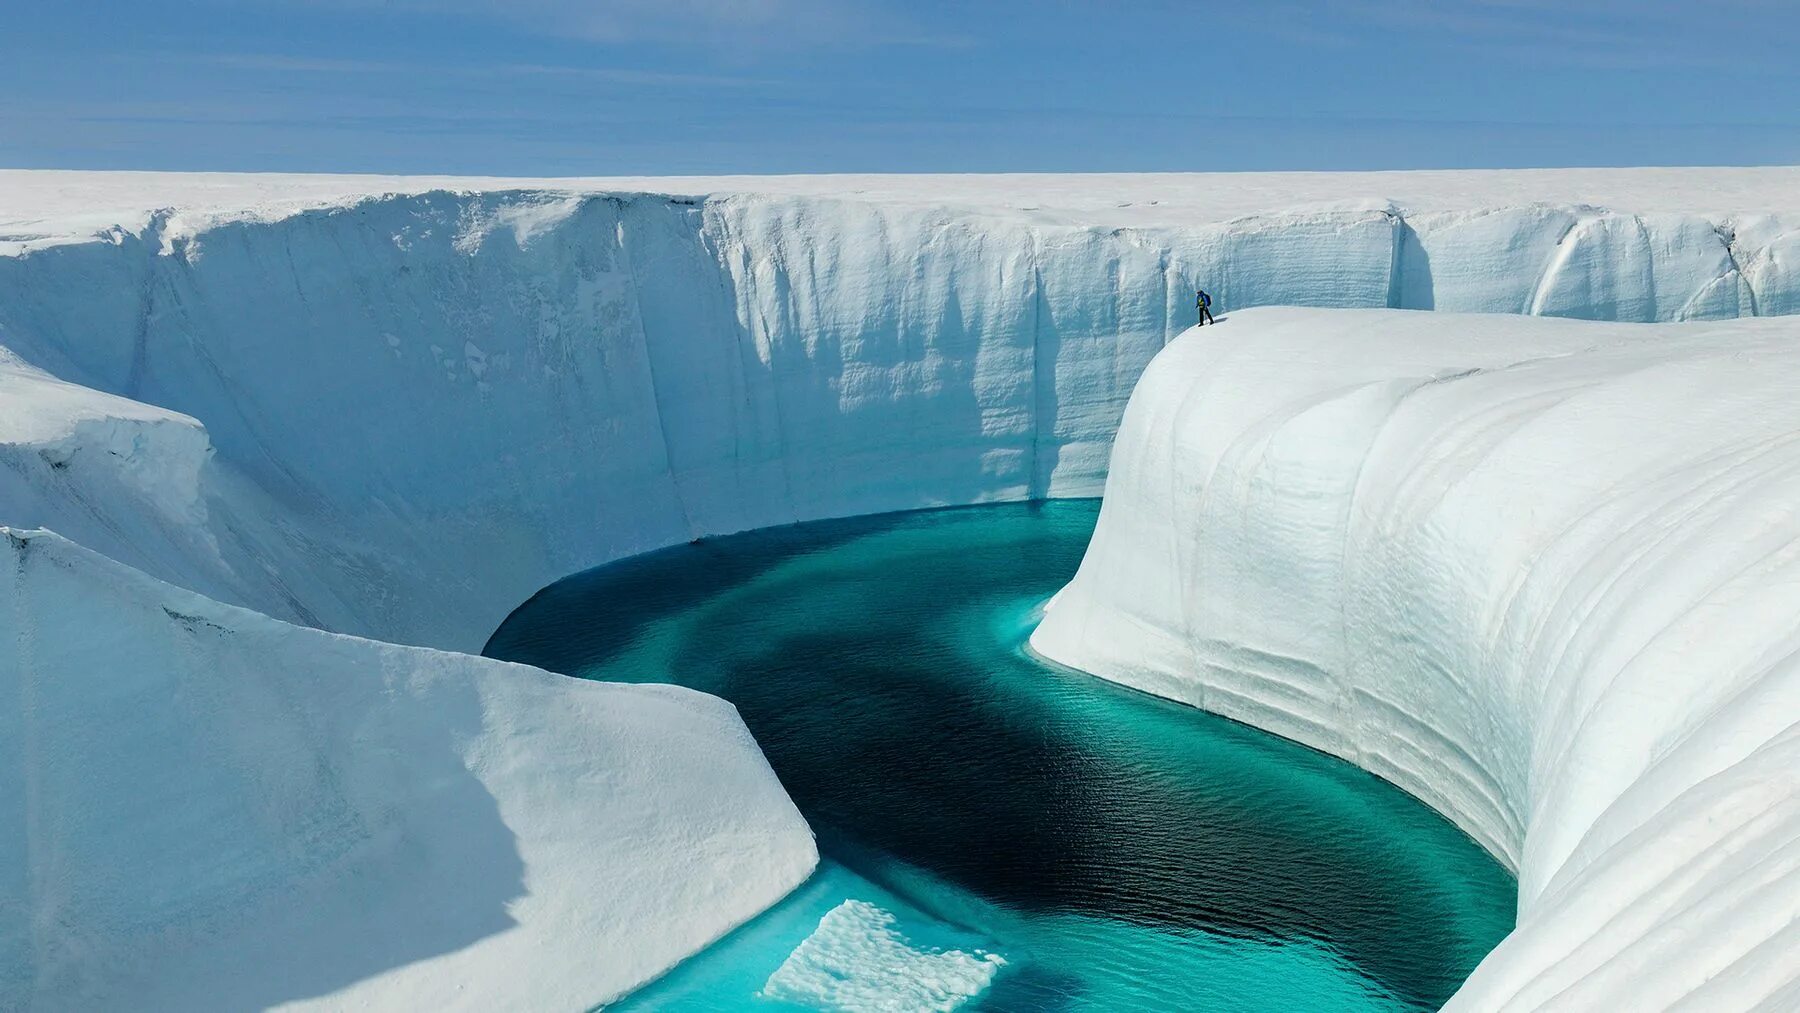 Ледяной каньон Гренландия. Большой каньон в Гренландии. Голубая река в леднике Гренландия. Ледник Булуус. Большой айс